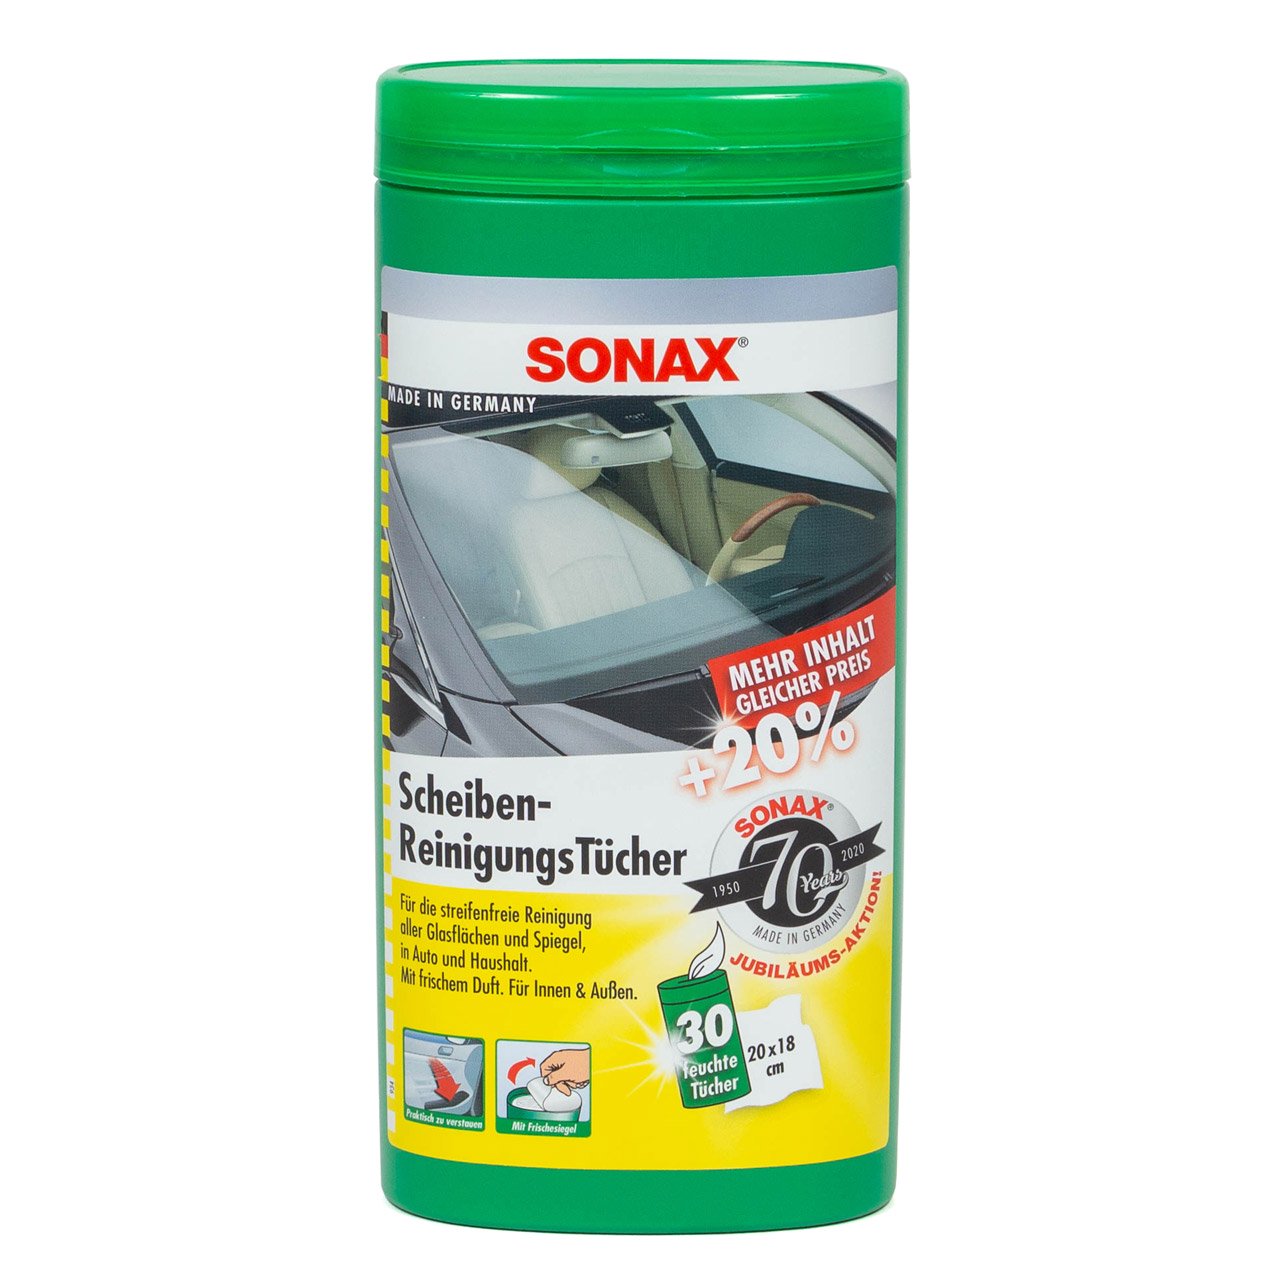 SONAX Scheibenreinigungstücher Box 412000 Reinigungstücher Autopflege 25 Stk